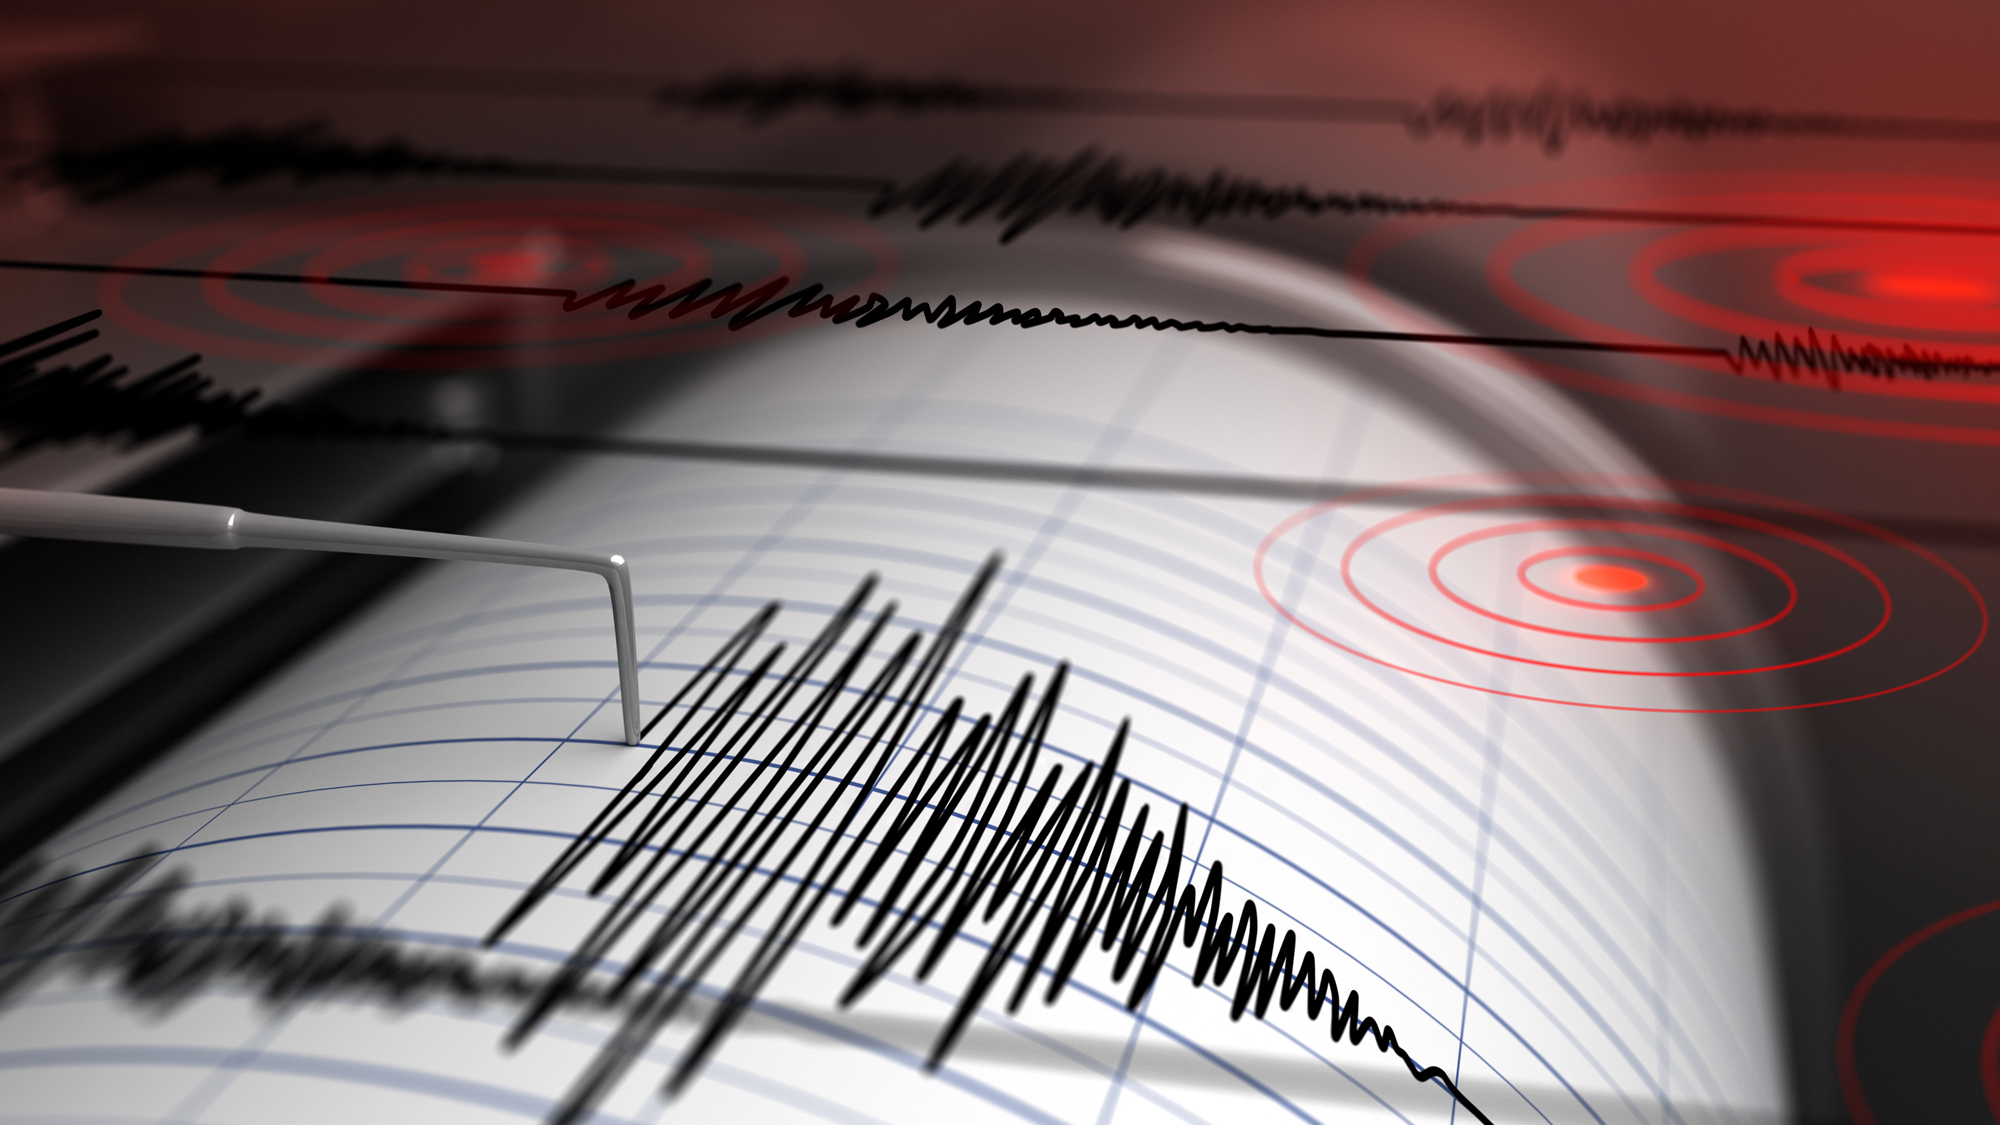 Image of an earthquake seismograph.